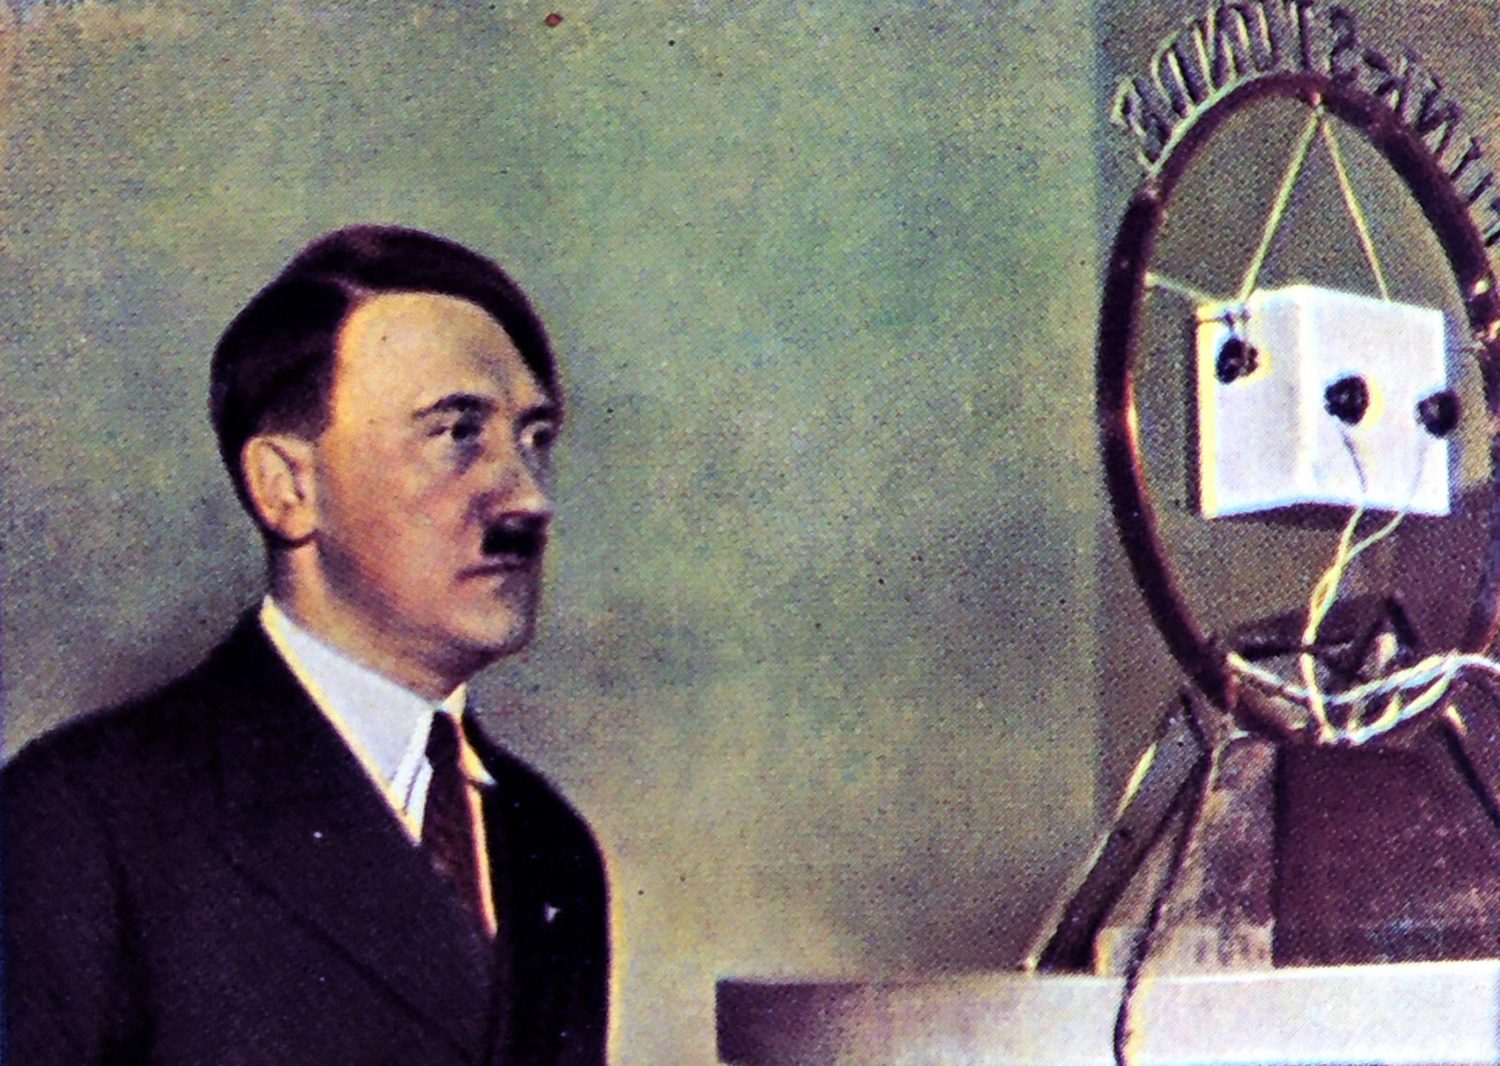 Radio Berlin: Adolf Hitler während einer Radioansprache, um 1934. Foto: Imago/United Archives International